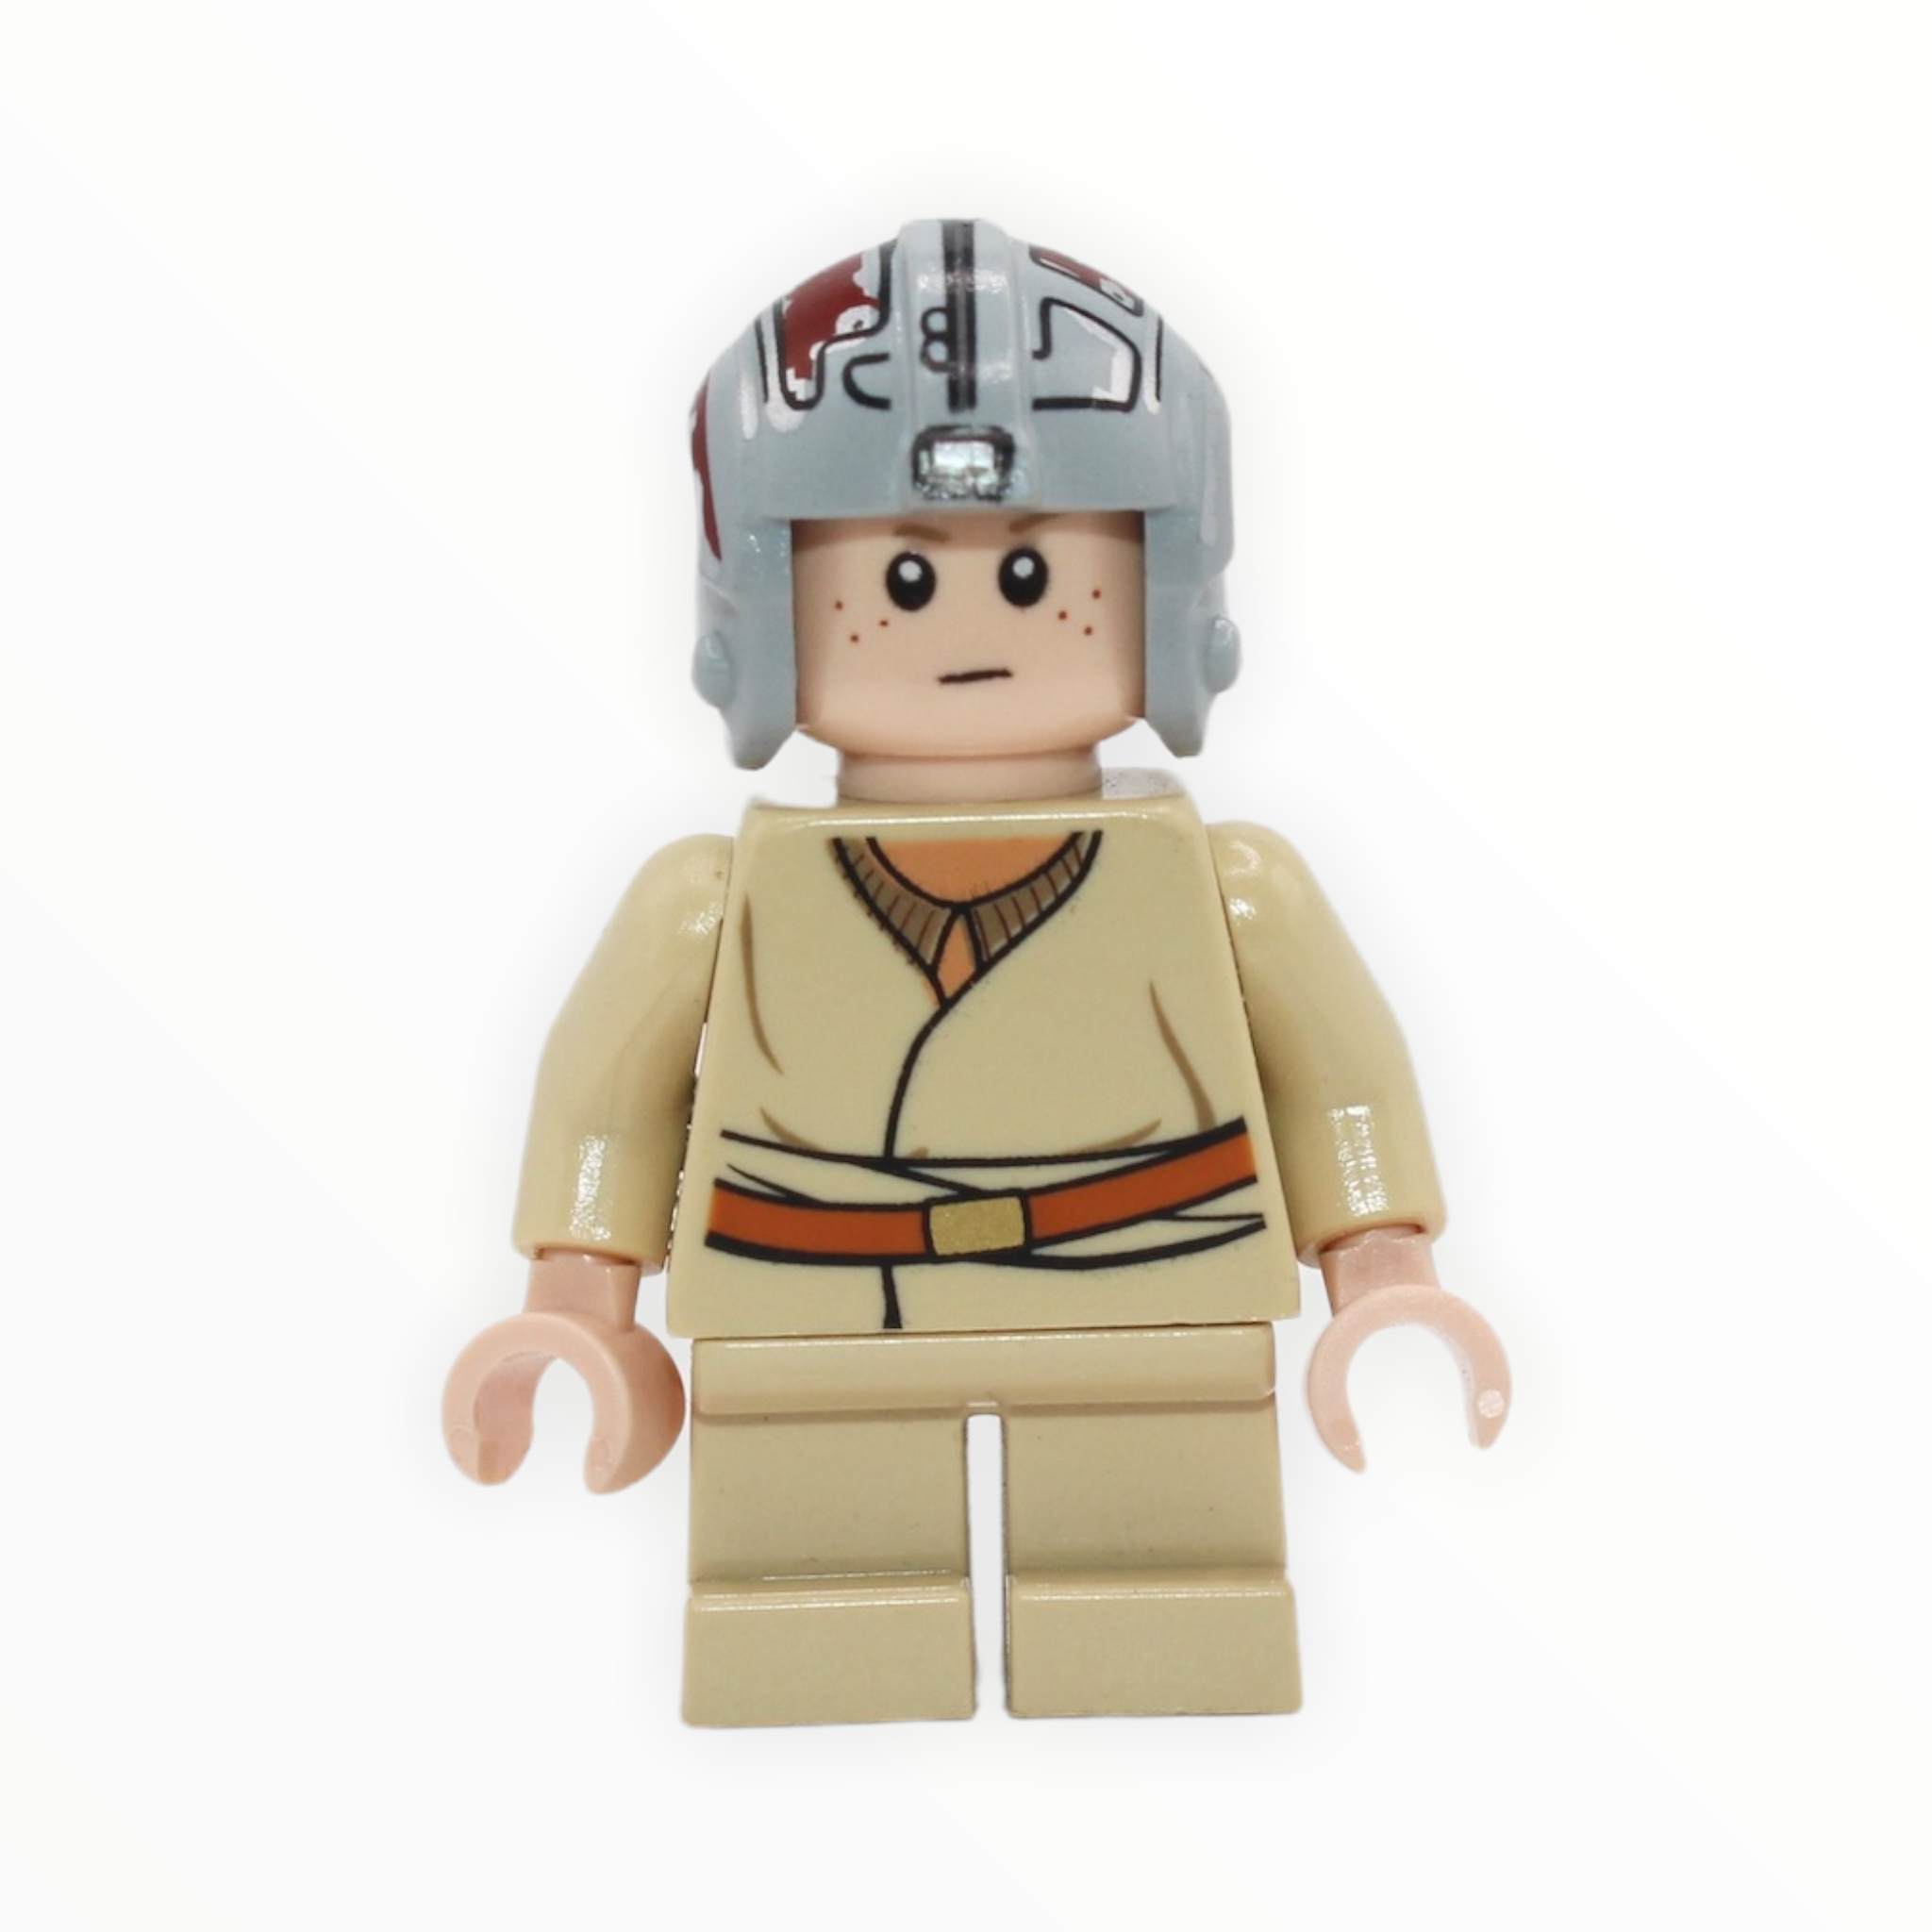 Anakin Skywalker (young, Podracing helmet, 2011)